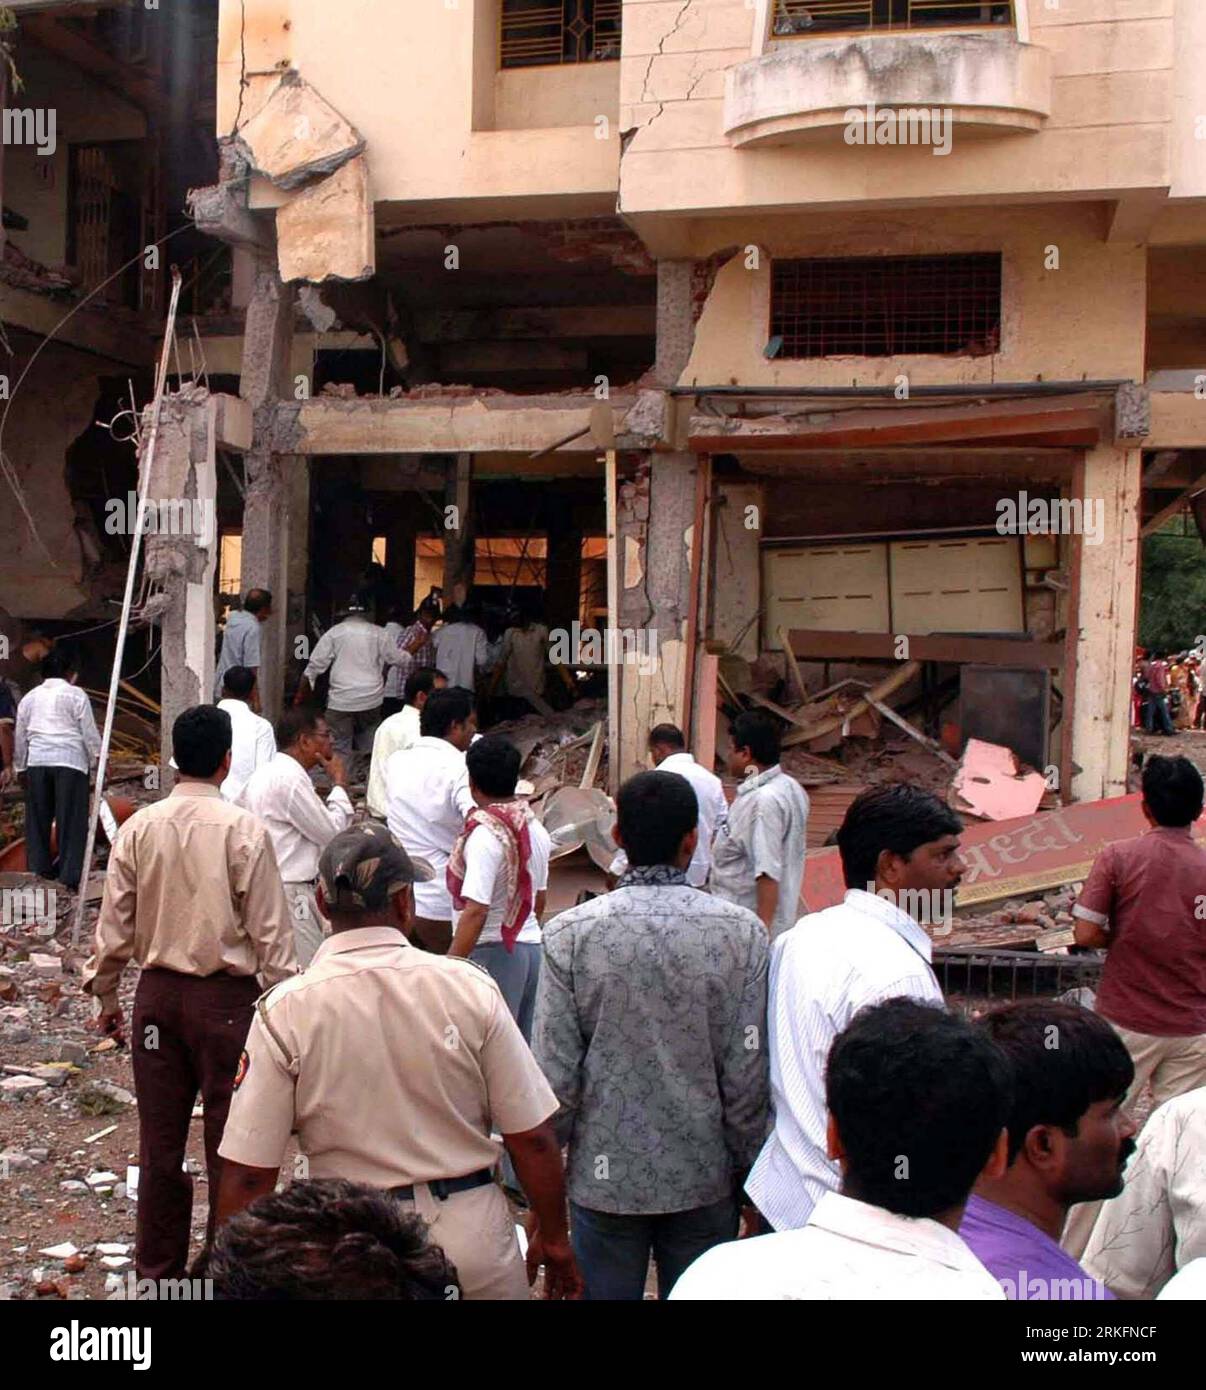 Bildnummer: 55439824 Datum: 08.06.2011 Copyright: imago/Xinhua (110608) -- NASIK (INDIA), 8 giugno 2011 (Xinhua) -- riunirsi in un edificio residenziale danneggiato da un'esplosione nel distretto di Nasik, India, 8 giugno 2011. Almeno quattro sono stati uccisi e altri sette feriti in una sospetta esplosione di bombole di gas, hanno riferito i media locali. (Xinhua/Stringer) (wjd) INDIA-NASIK-CYLINDER EXPLOSION PUBLICATIONxNOTxINxCHN Gesellschaft xsk 2011 quadrat o0 Gasexplosion, Unglück, Zerstörung, Schäden Bildnummer 55439824 Data 08 06 2011 Copyright Imago XINHUA 110608 Nasik India 8 giugno 2011 XINHUA si radunano A Foto Stock